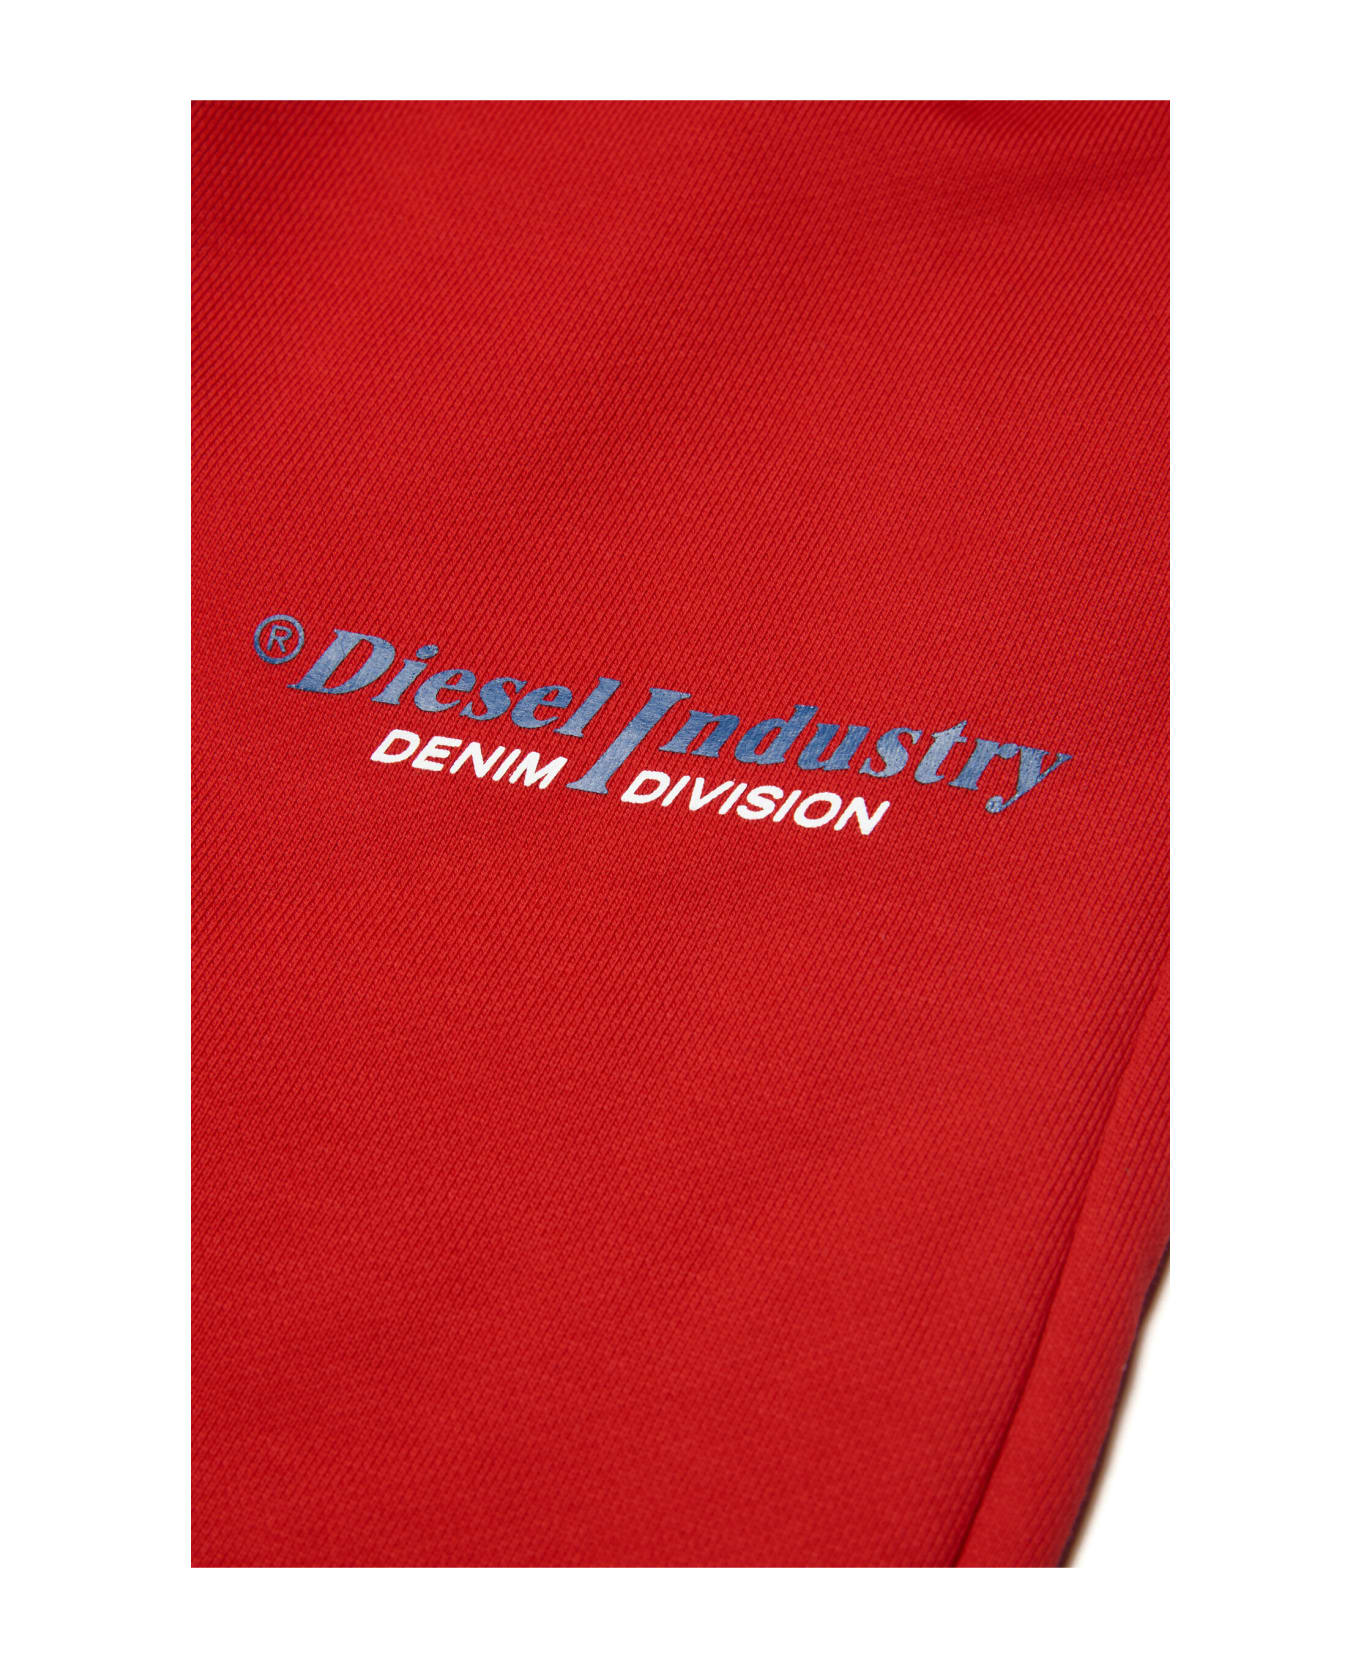 Diesel Pvenusind Trousers gris Diesel Red Fleece Pants With Diesel Industry Logo - Carnation red